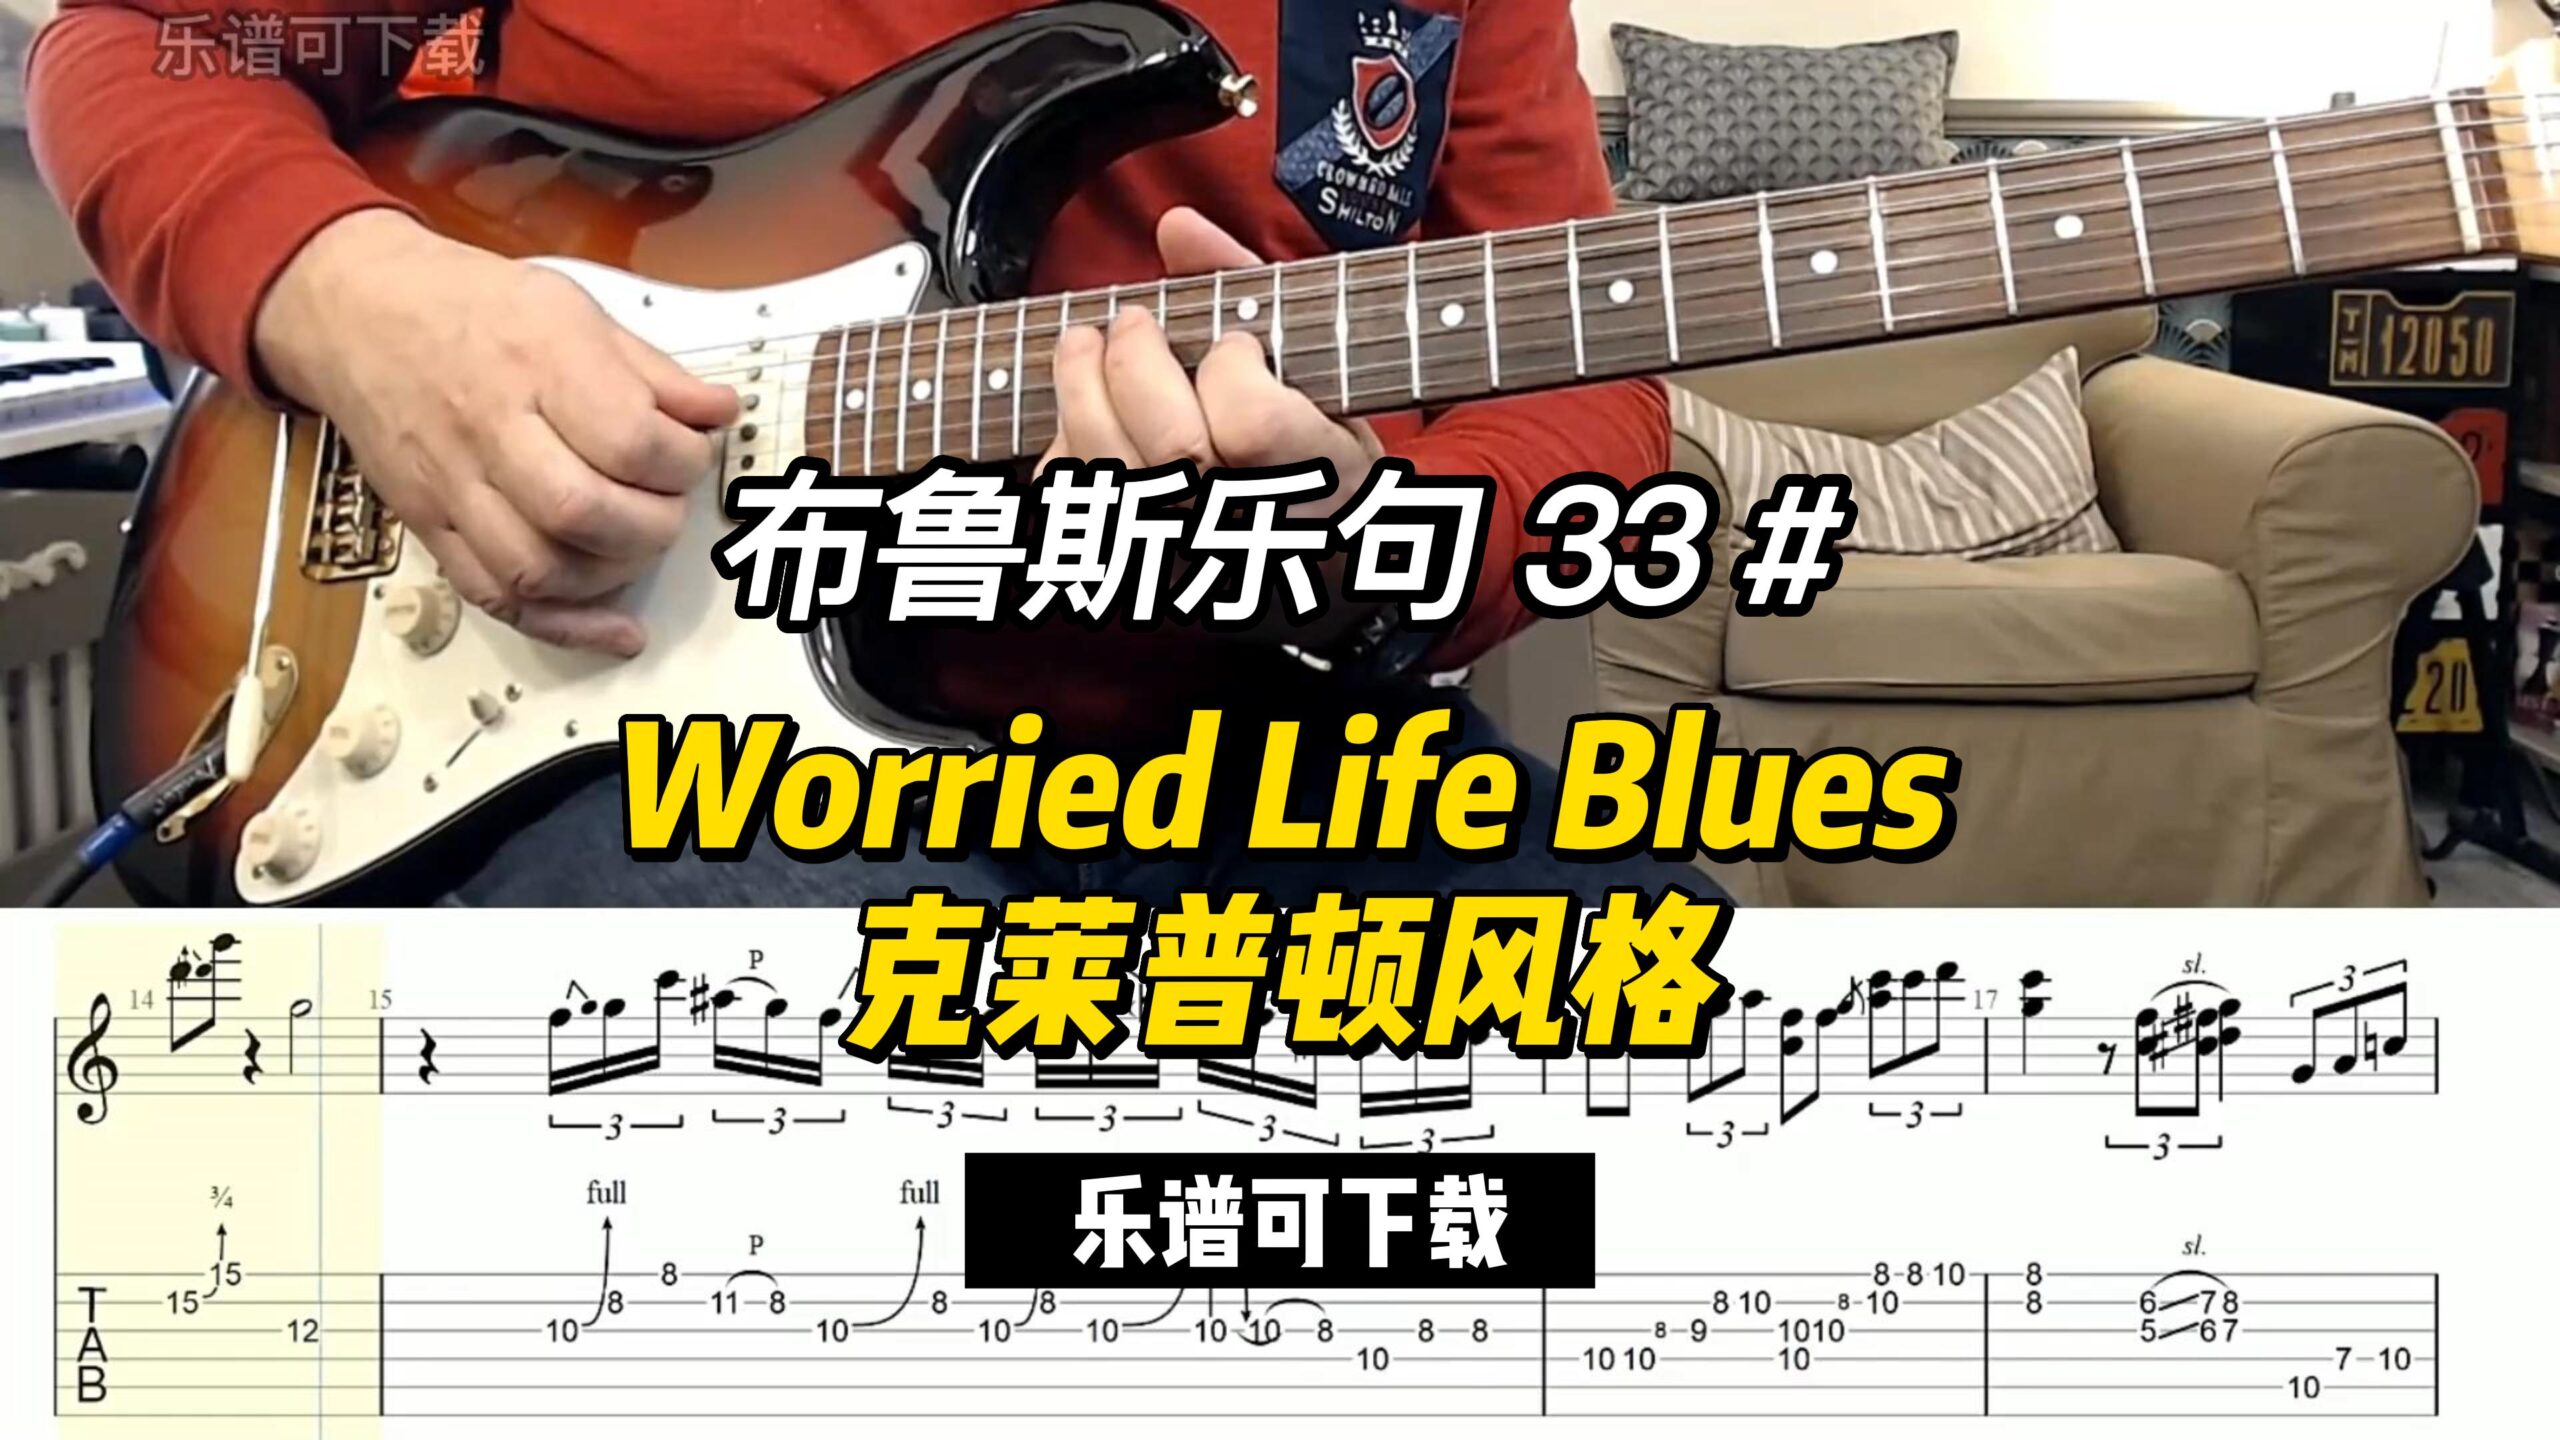 【布鲁斯乐句】Worried Life Blues 克莱普顿风格（乐谱可下载）-古桐博客